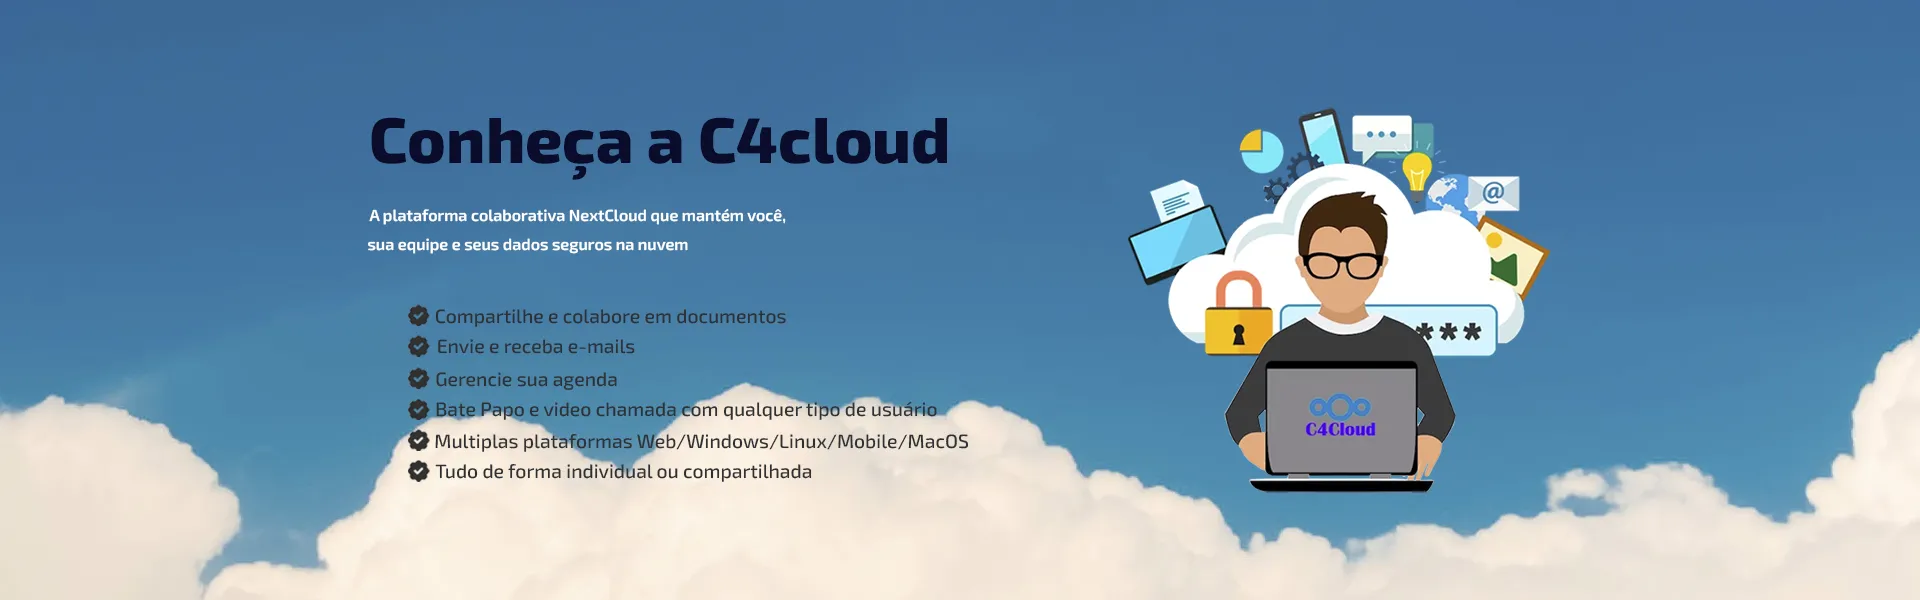 Cloud Storage C4conecta - muito mais que armazenamento de dados na nuvem